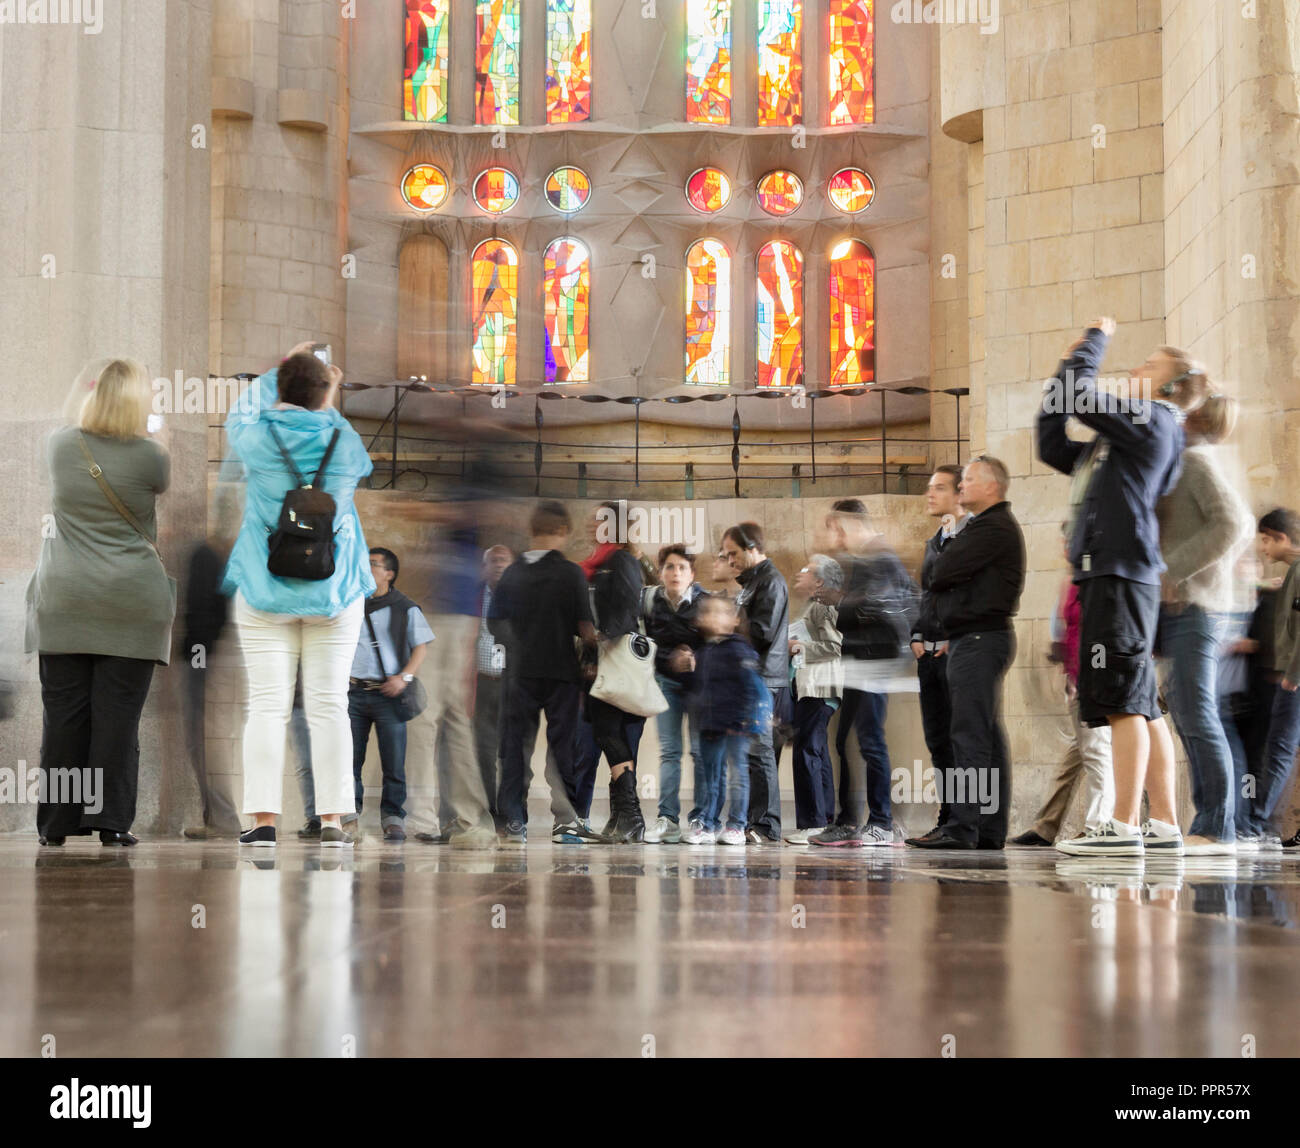 Les touristes à l'intérieur de la Sagrada Familia à Barcelone, Espagne Banque D'Images